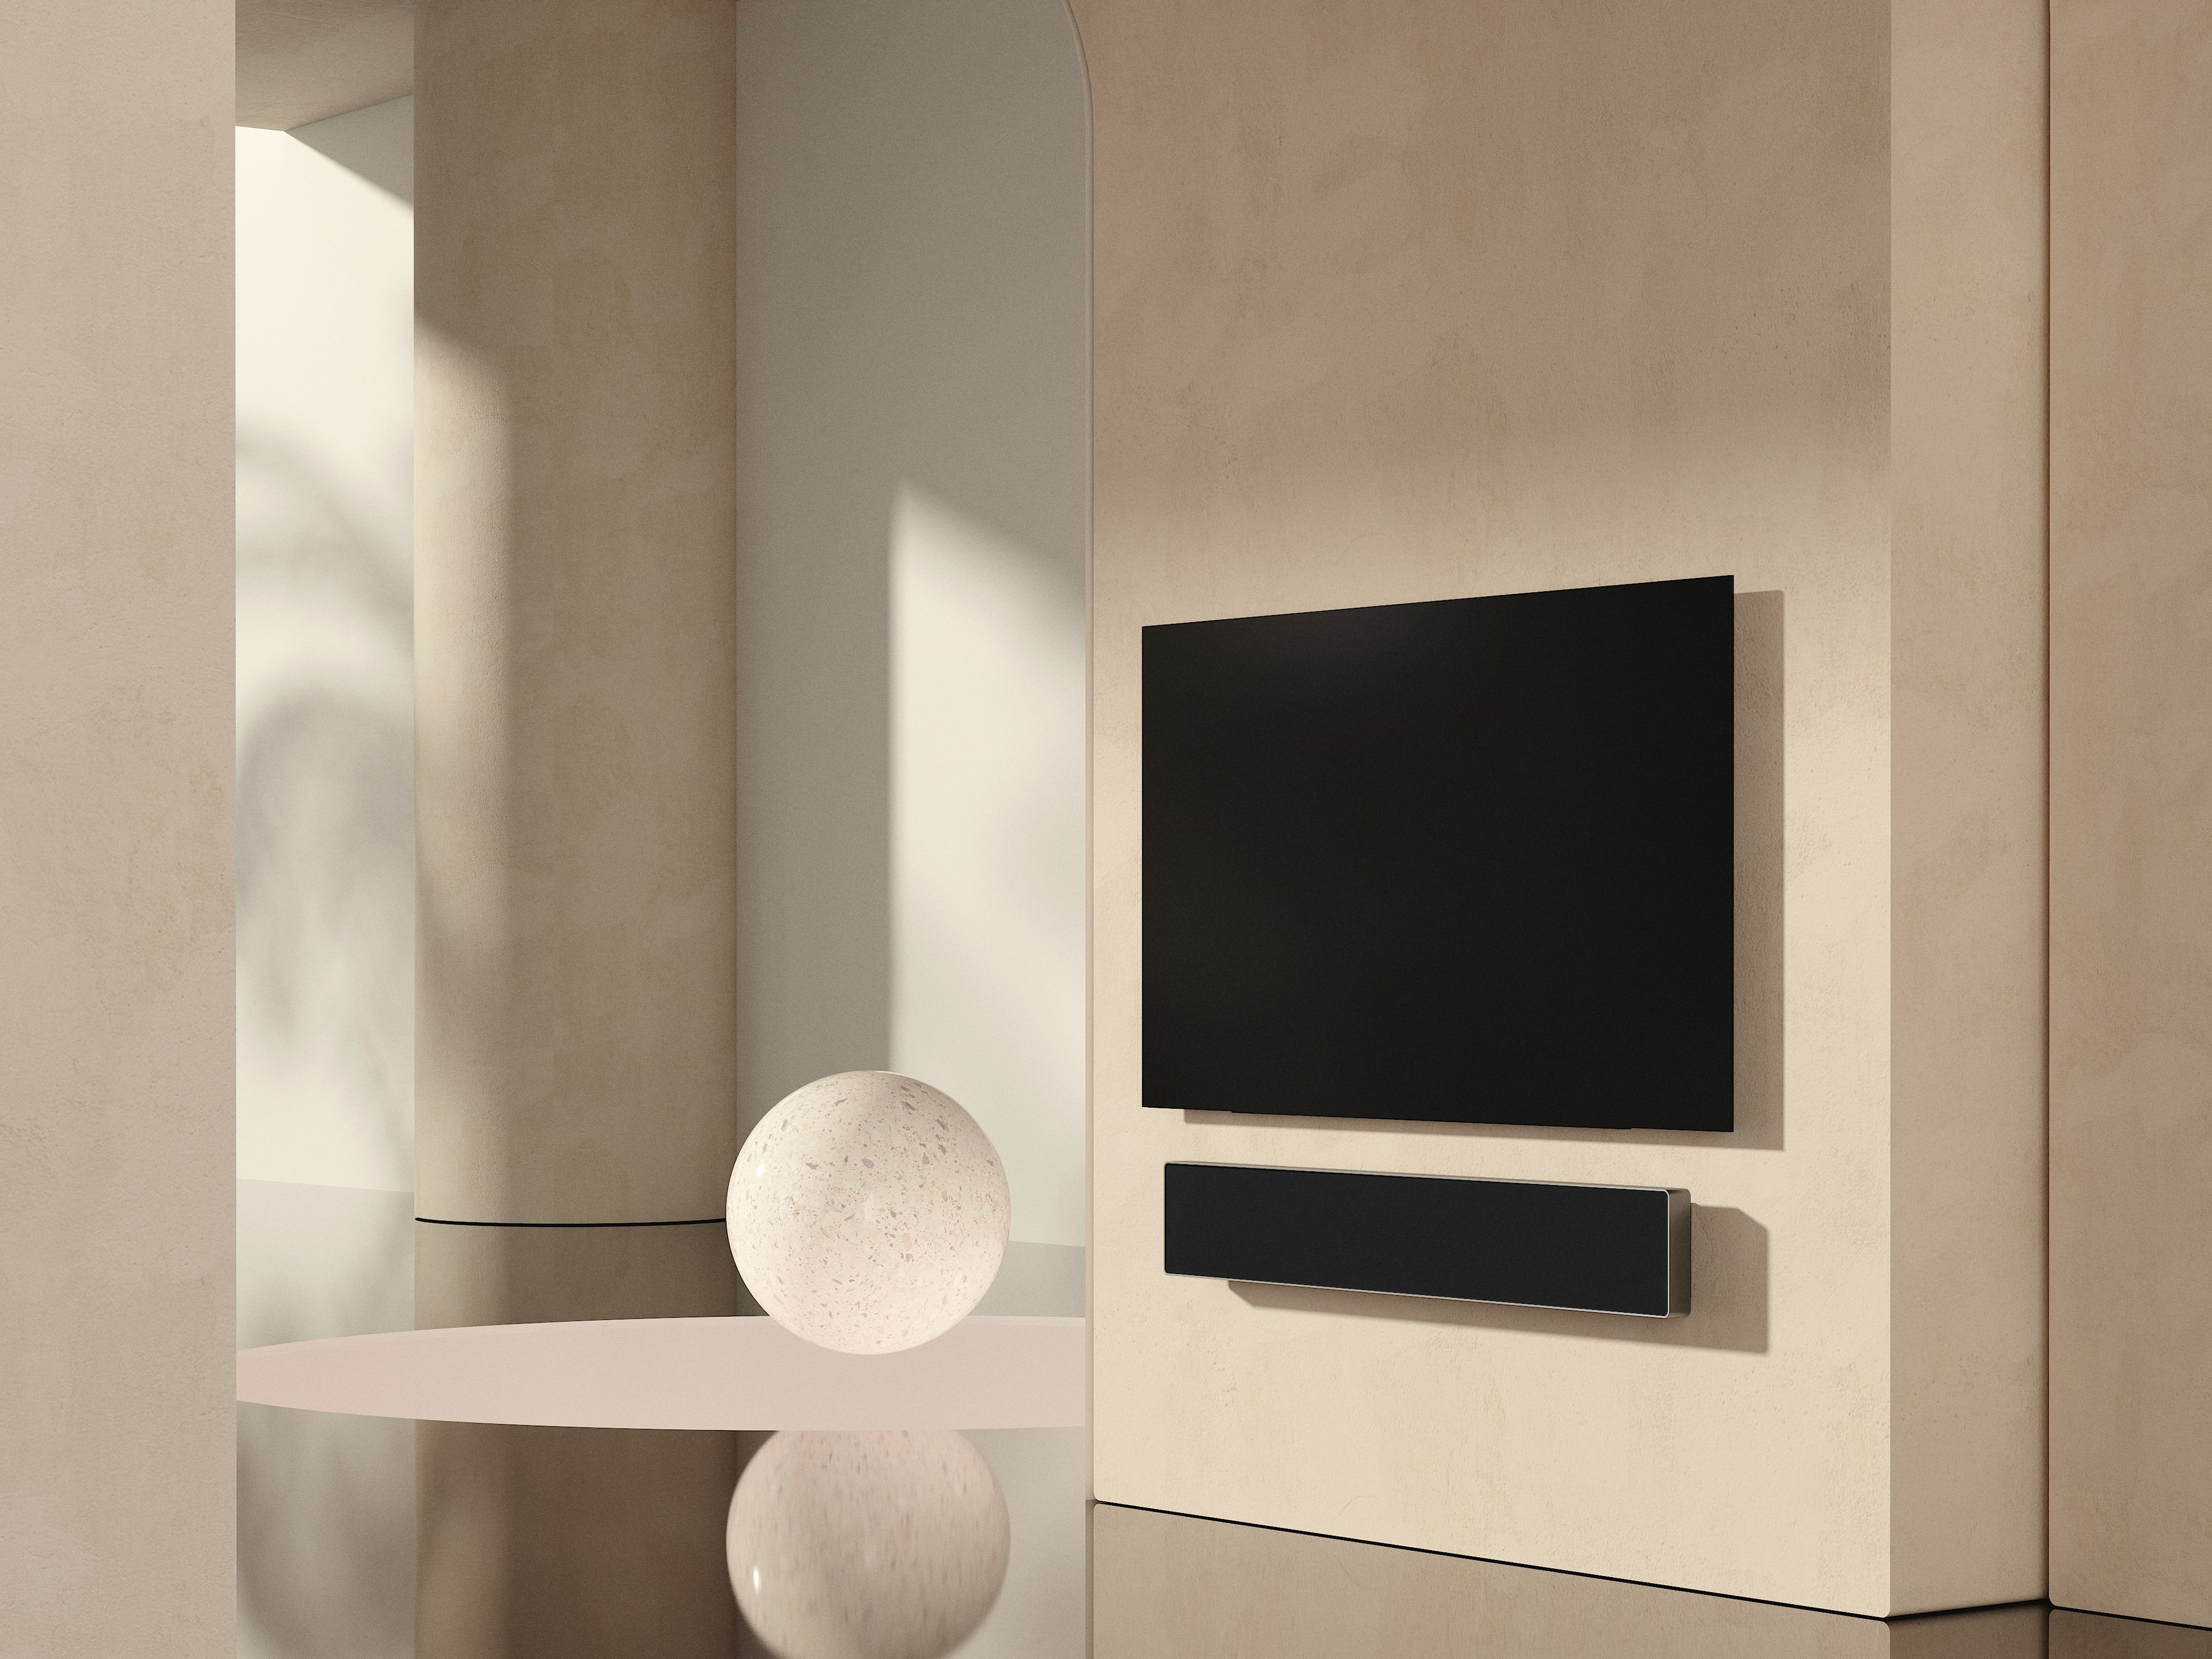 BeoSound Stage mit LG OLED TV in silber mit schwarzer Stoffabdeckung